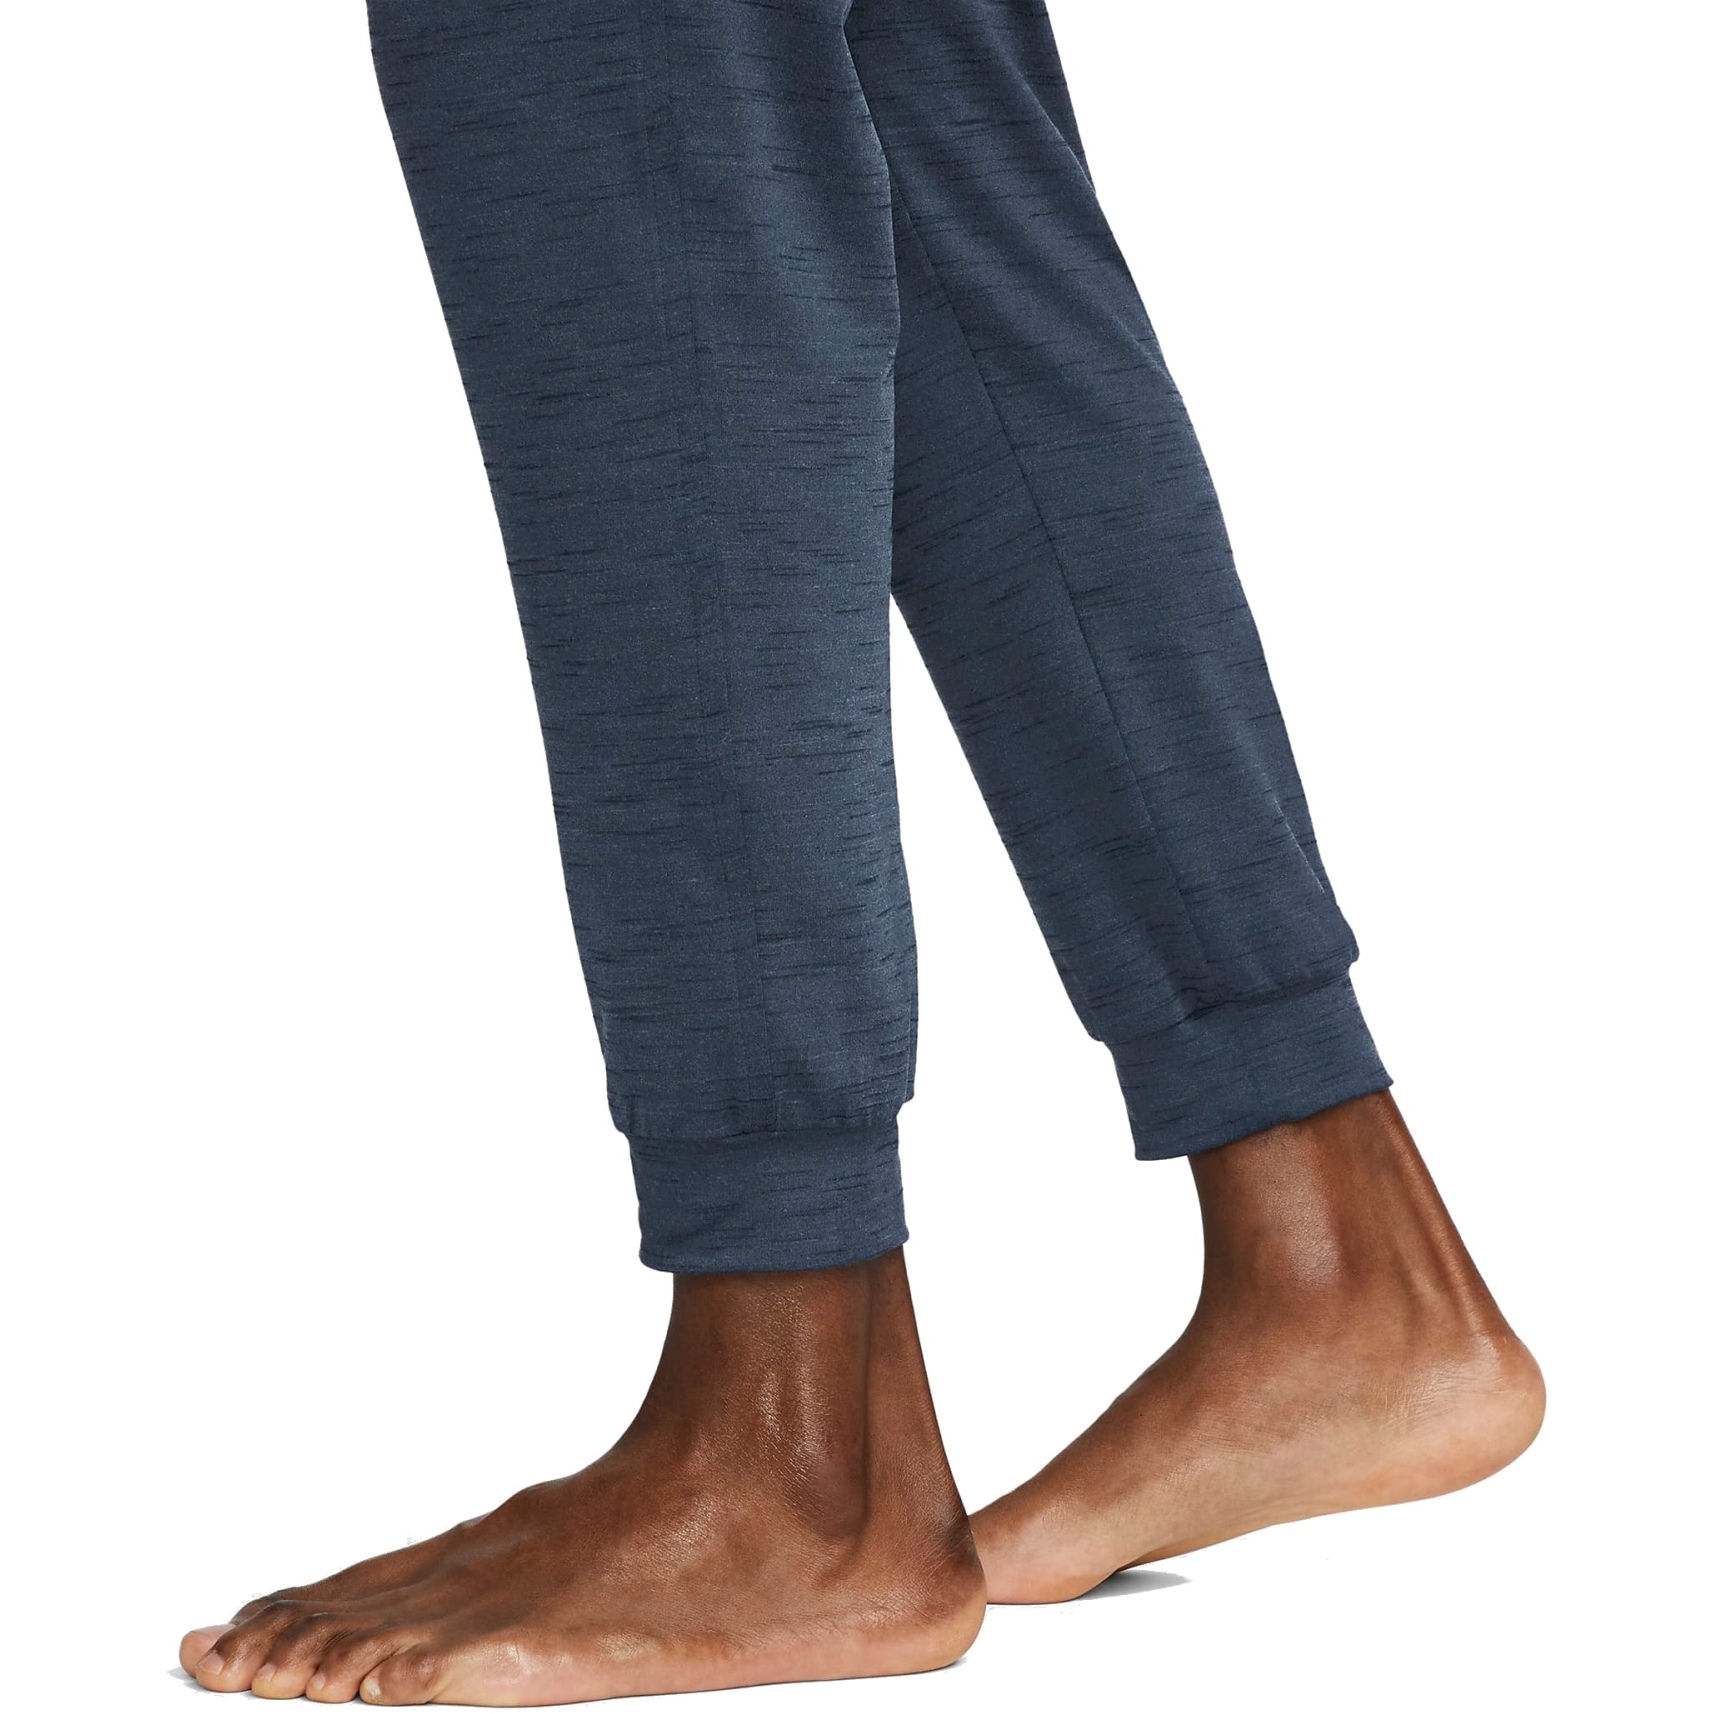 Amazoncom Nike Yoga Mens Pants BlackIron Grey Medium  Clothing  Shoes  Jewelry